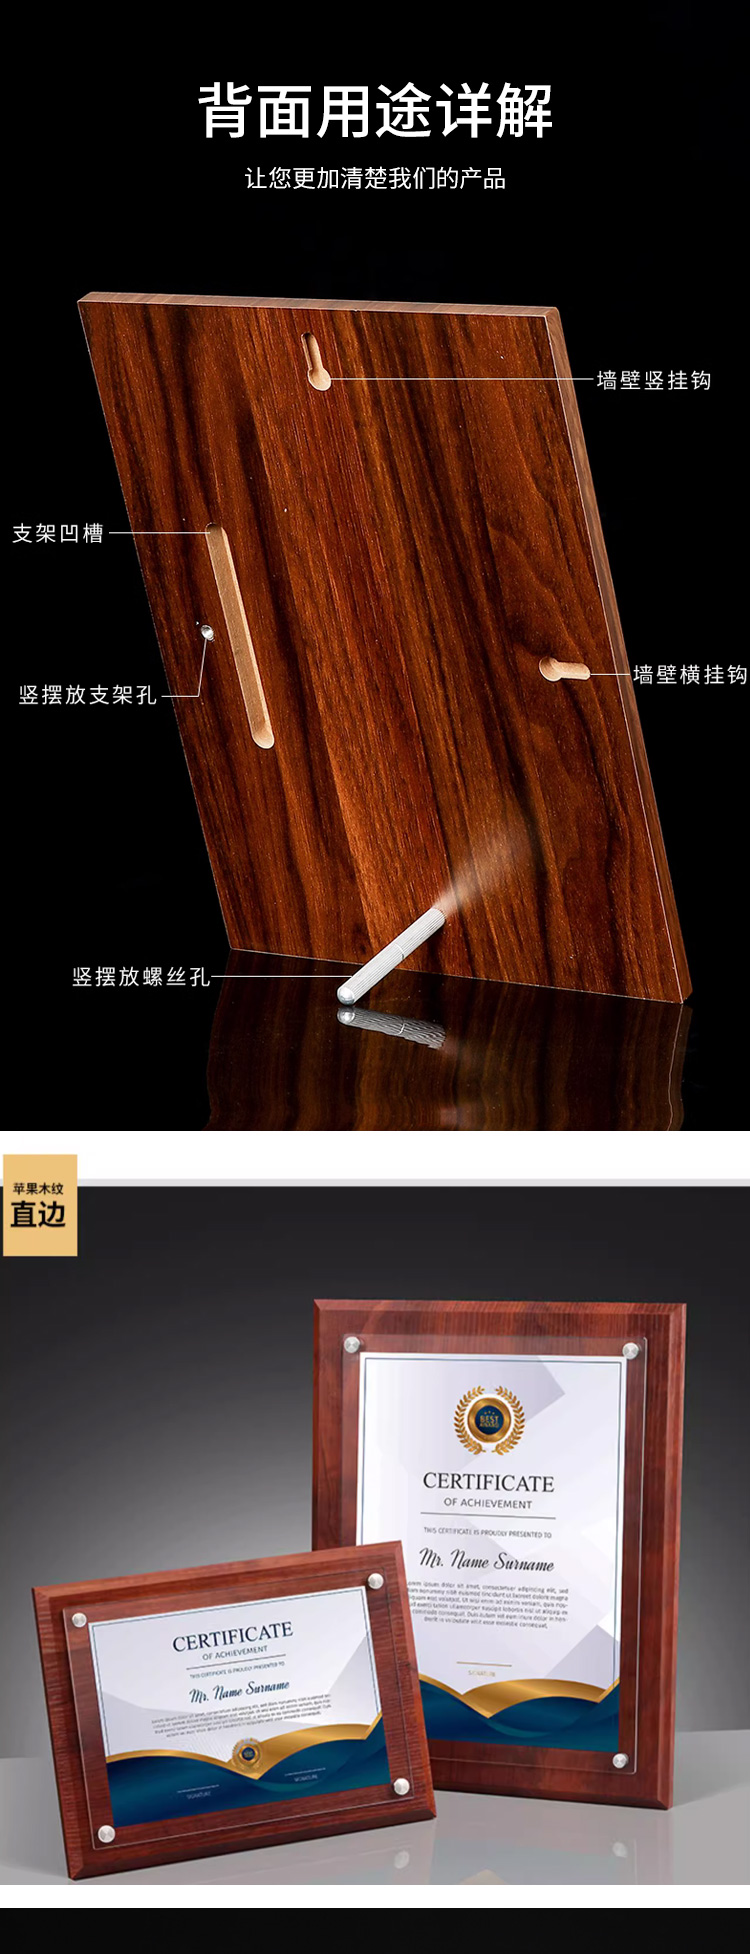 苹果木直边木板+亚克力面_02.jpg